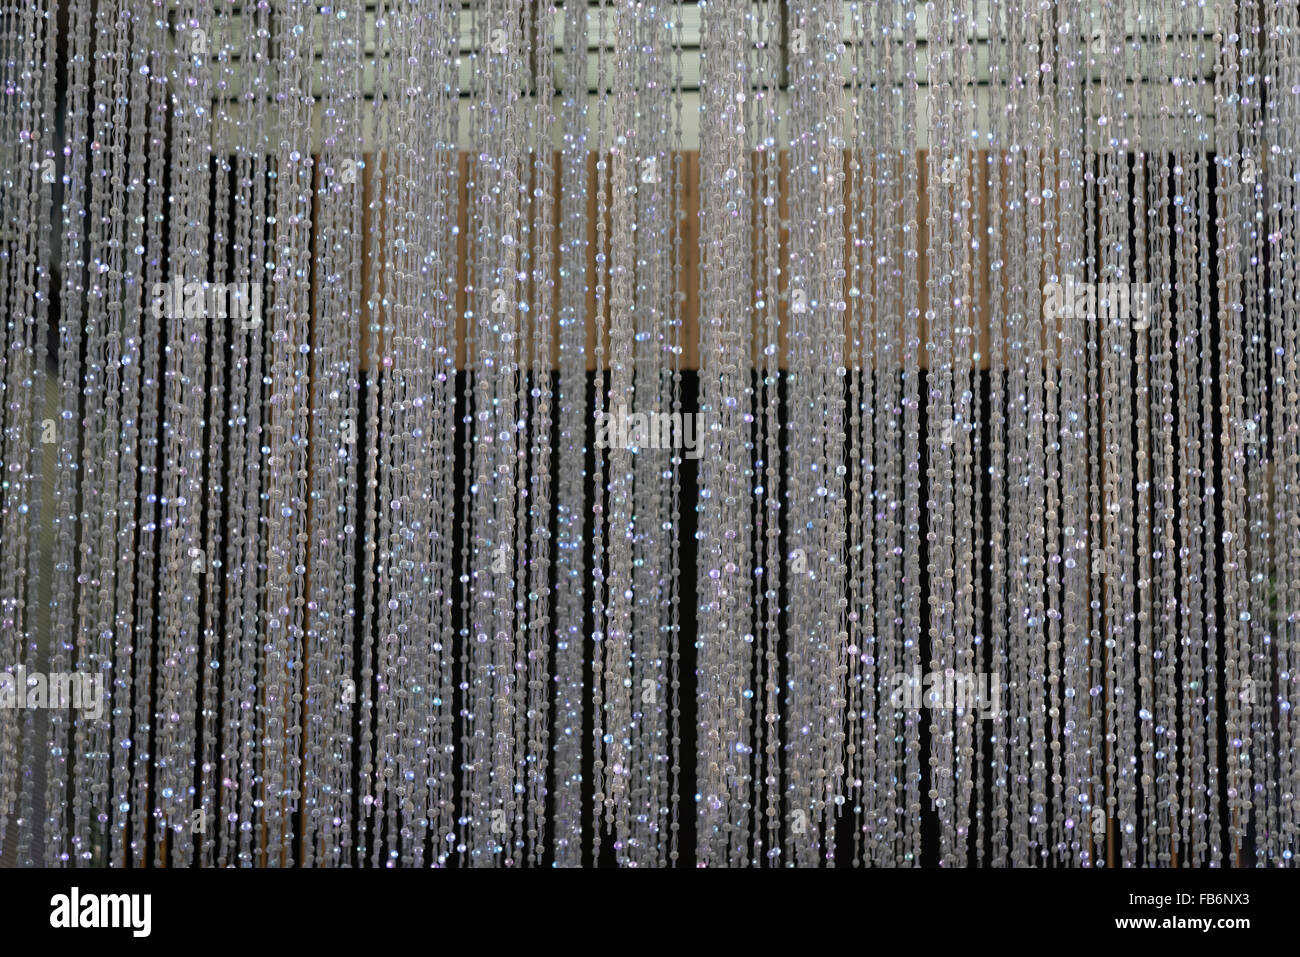 cristales colgantes Fotografía de - Alamy